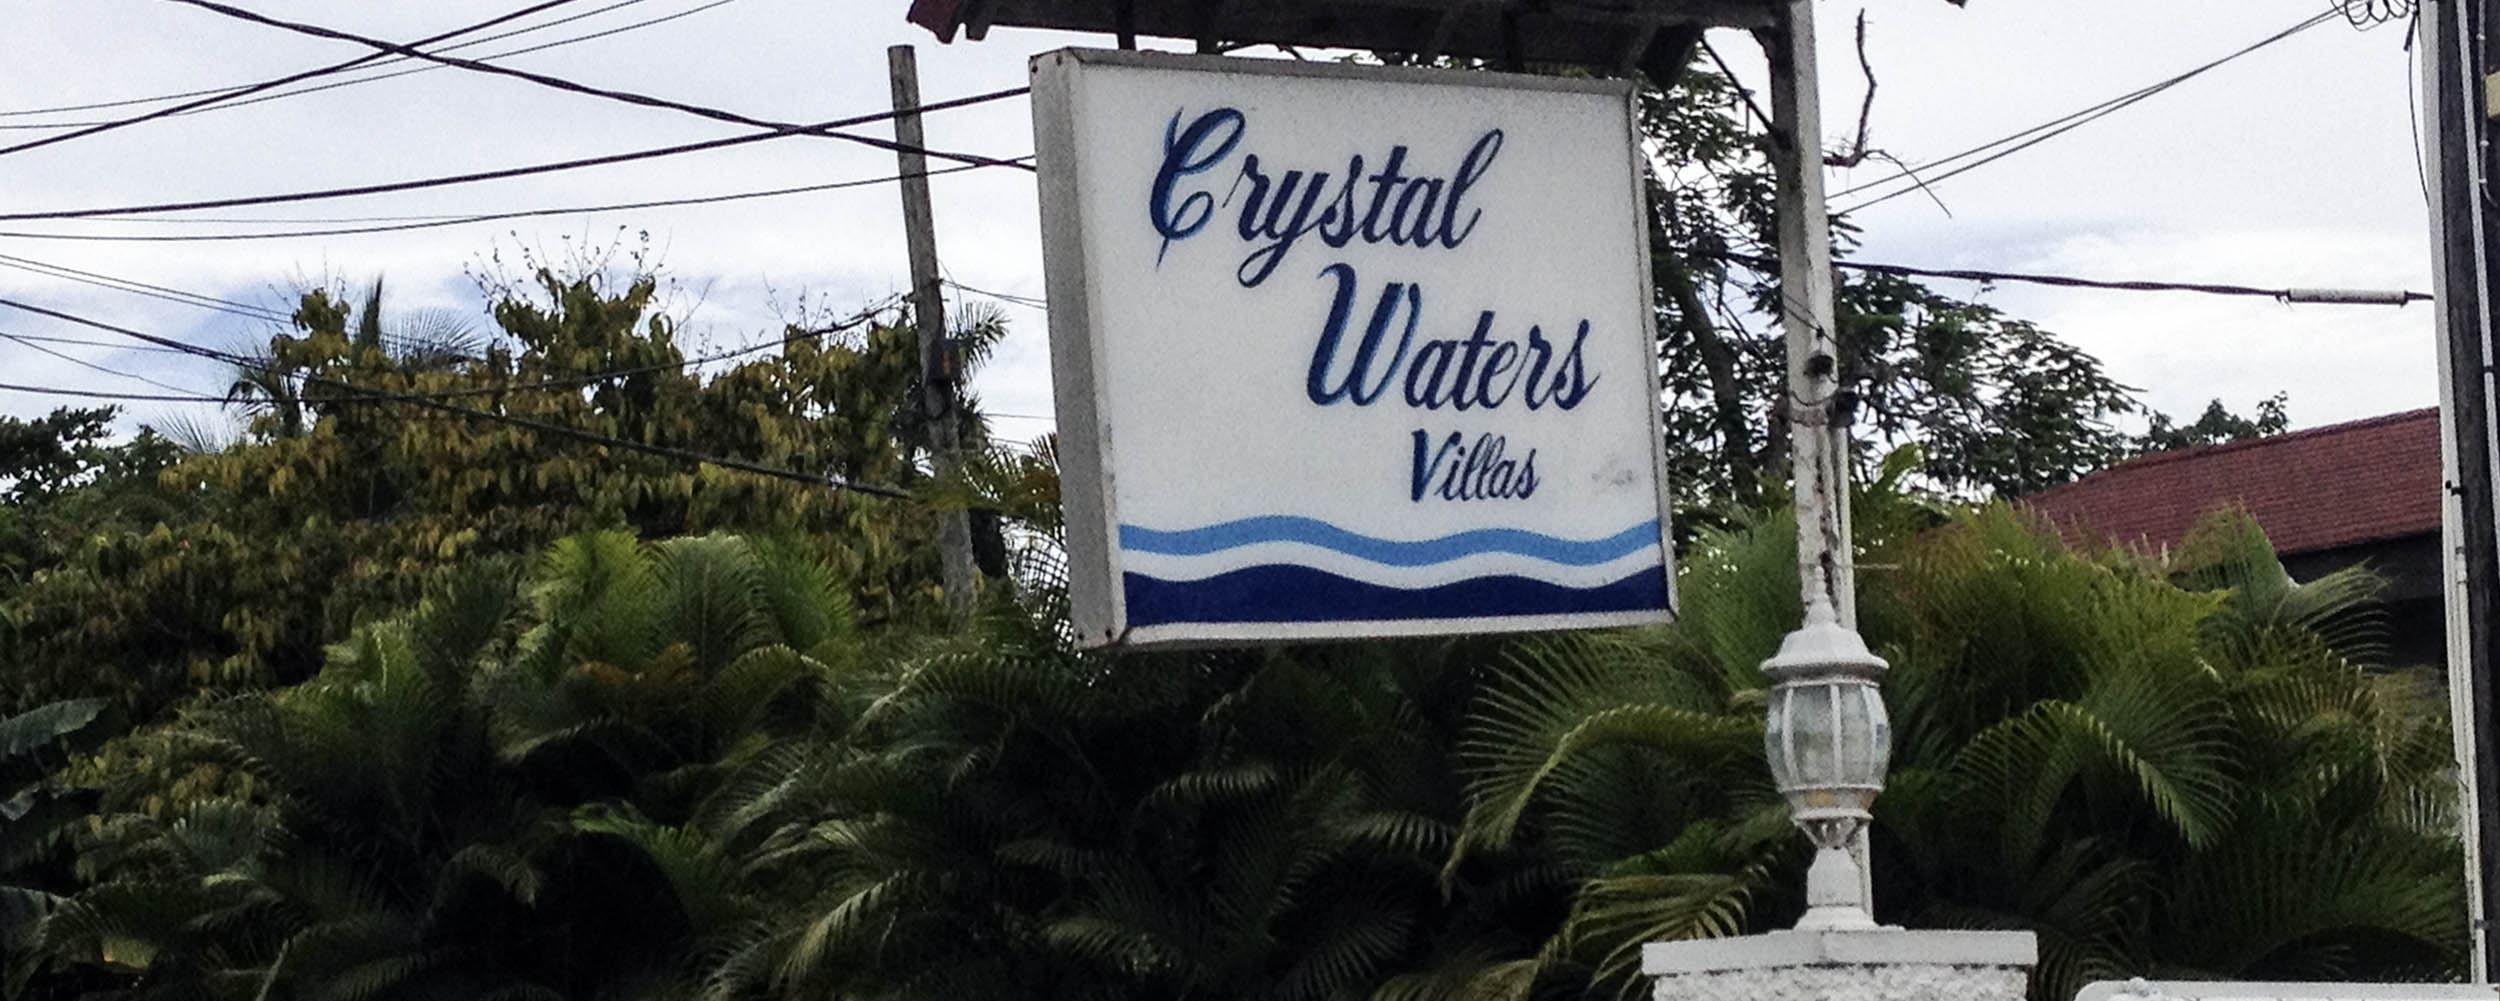 Crystal Waters Villas - Negril Jamaica